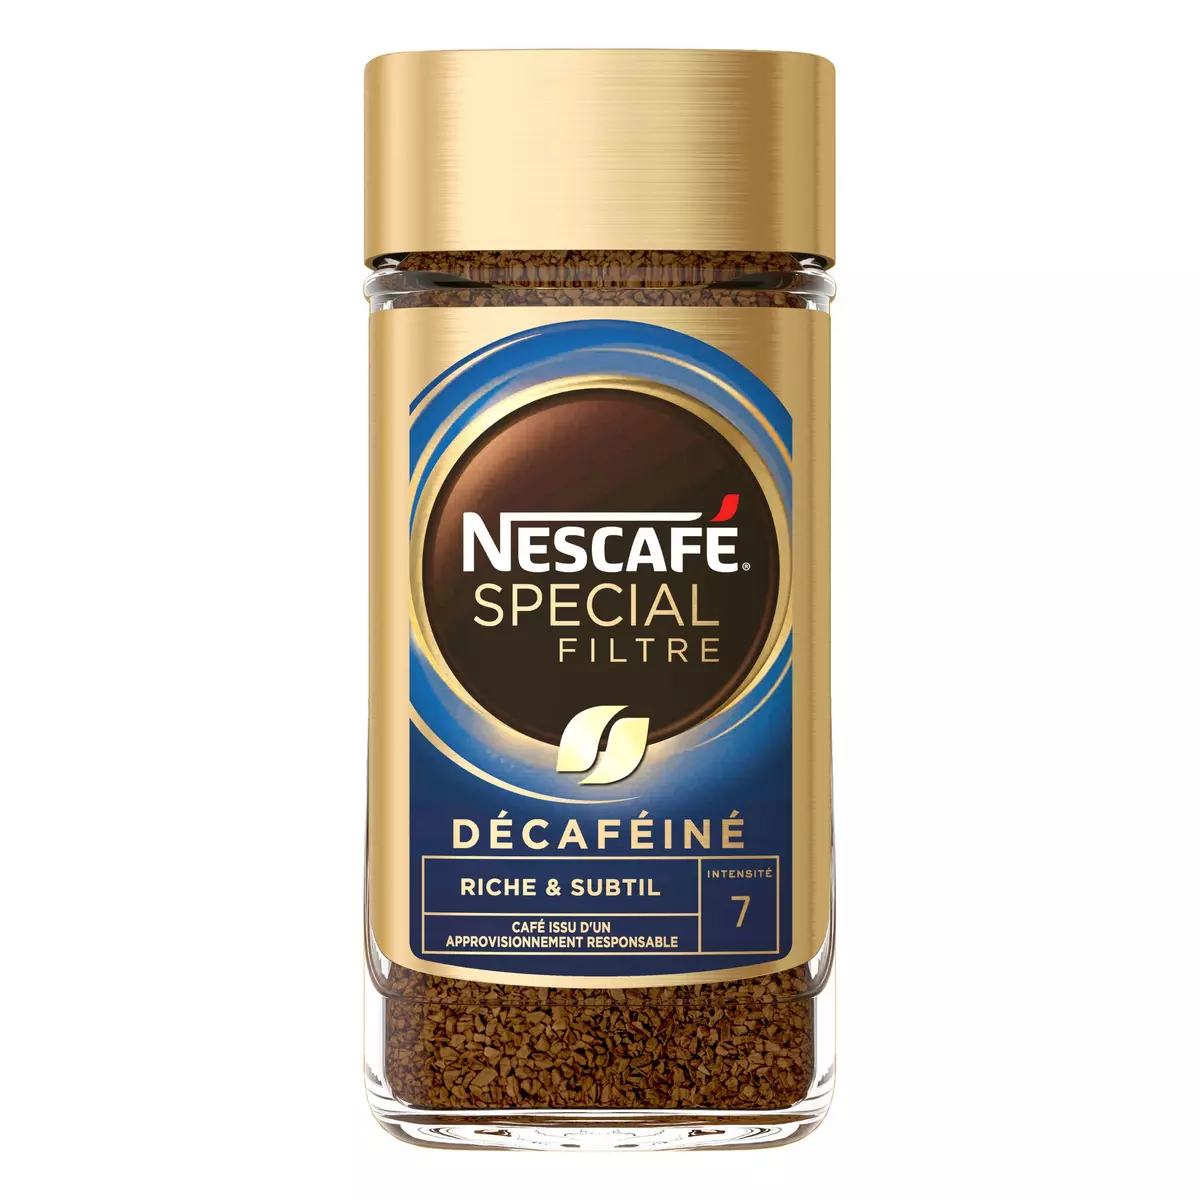 NESCAFE Café soluble décaféiné spécial filtre riche et subtil intensité 7 200g